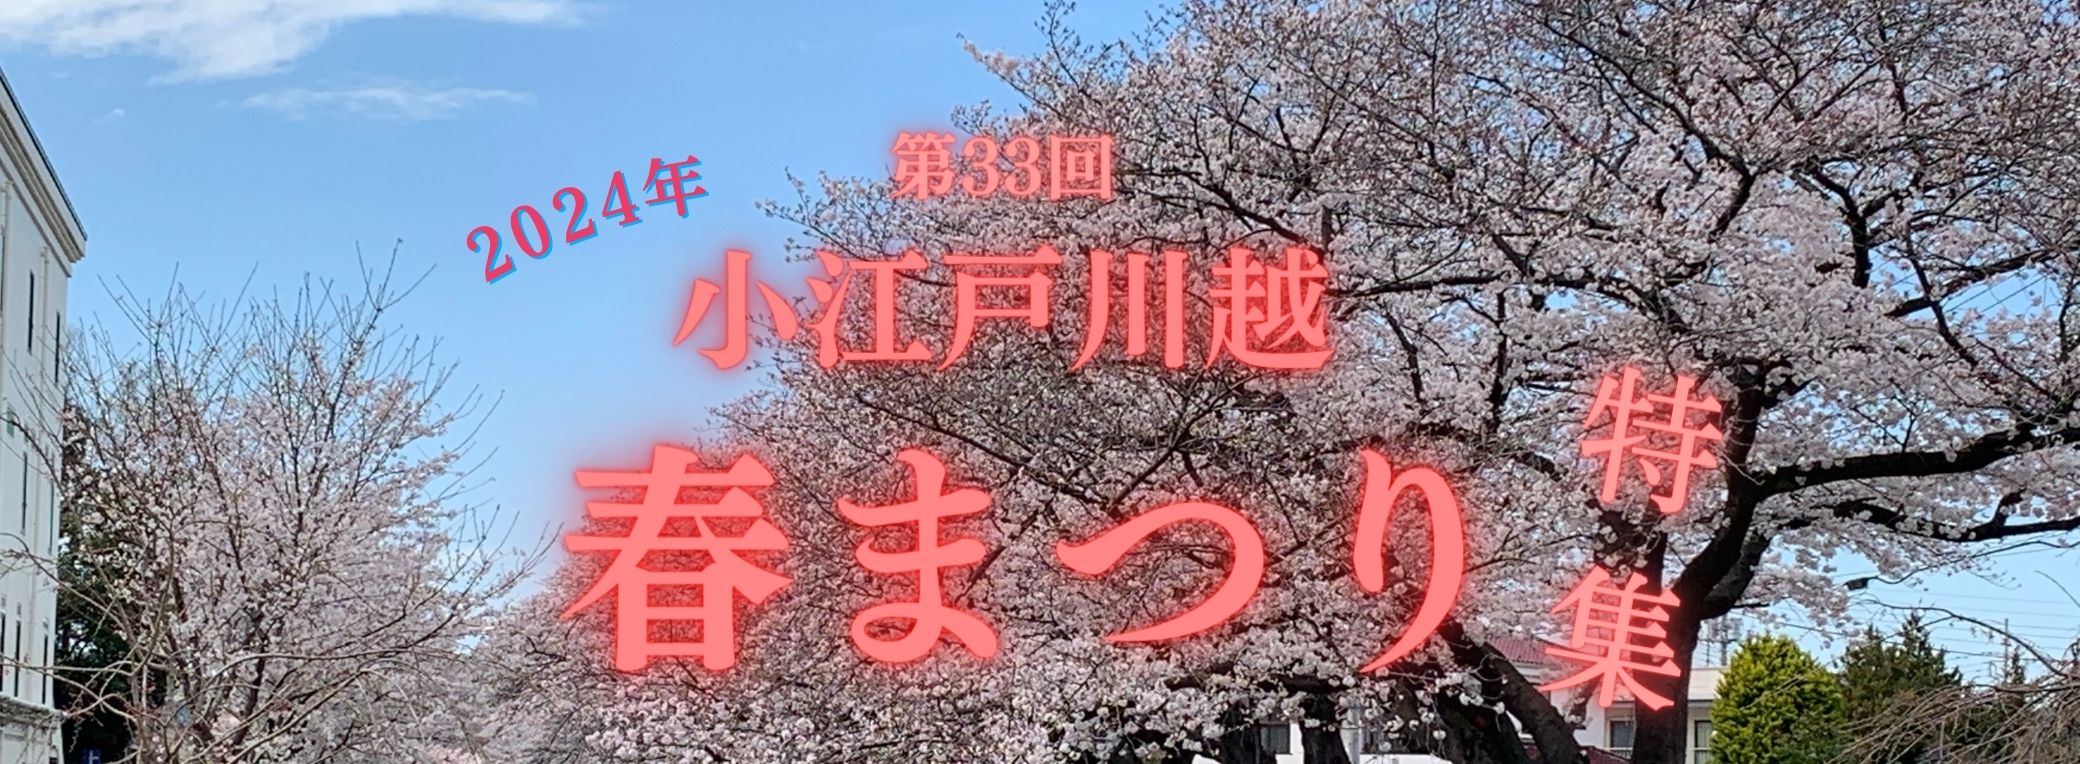 第33屆小江戶川越春祭舉行